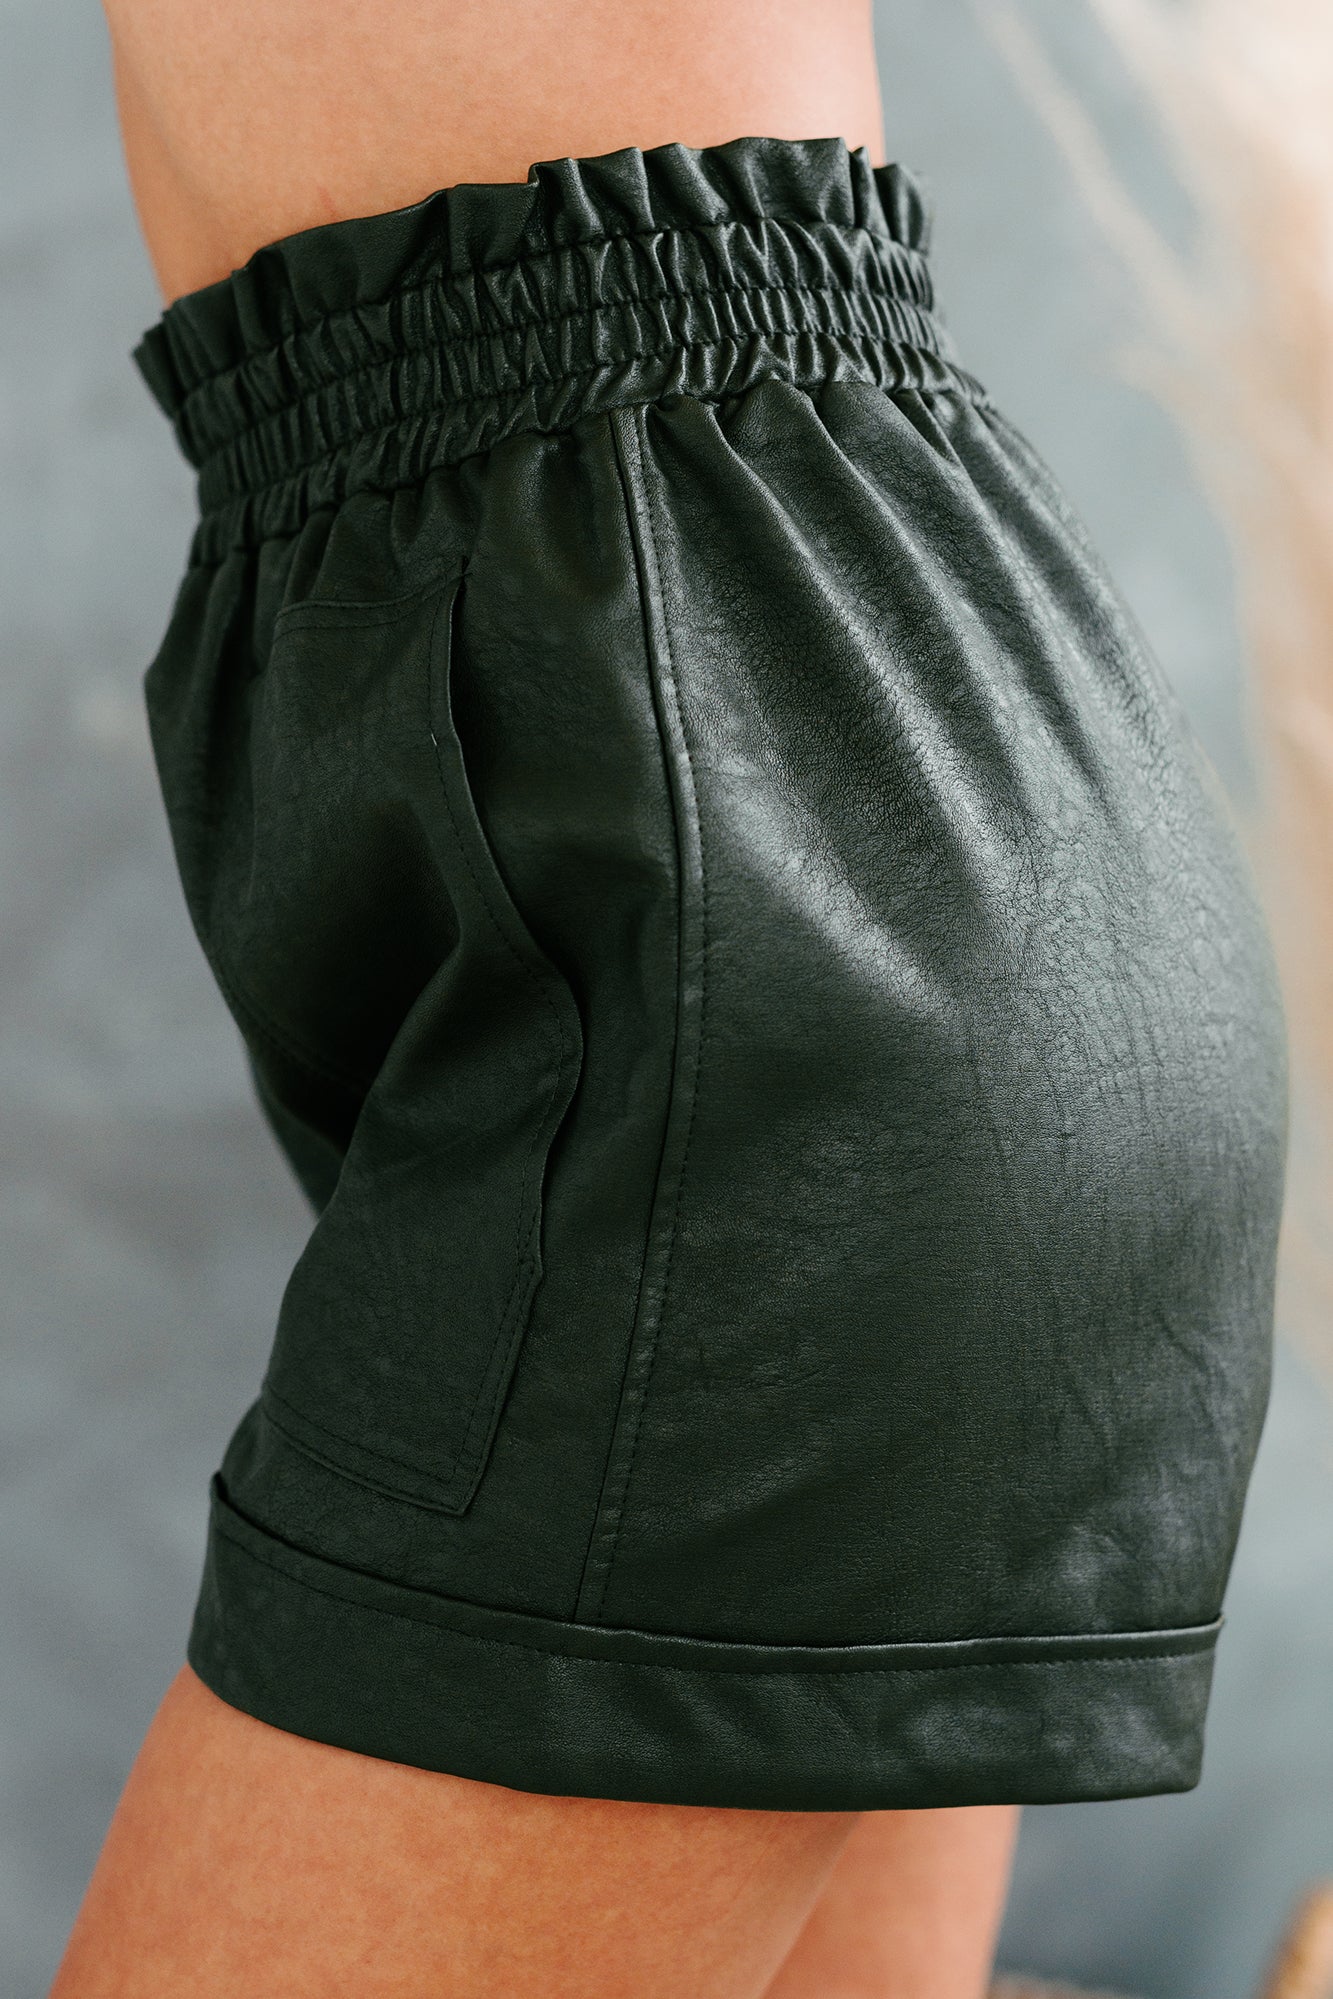 Sunset Avenue High Waisted Faux Leather Shorts (Olive) - NanaMacs